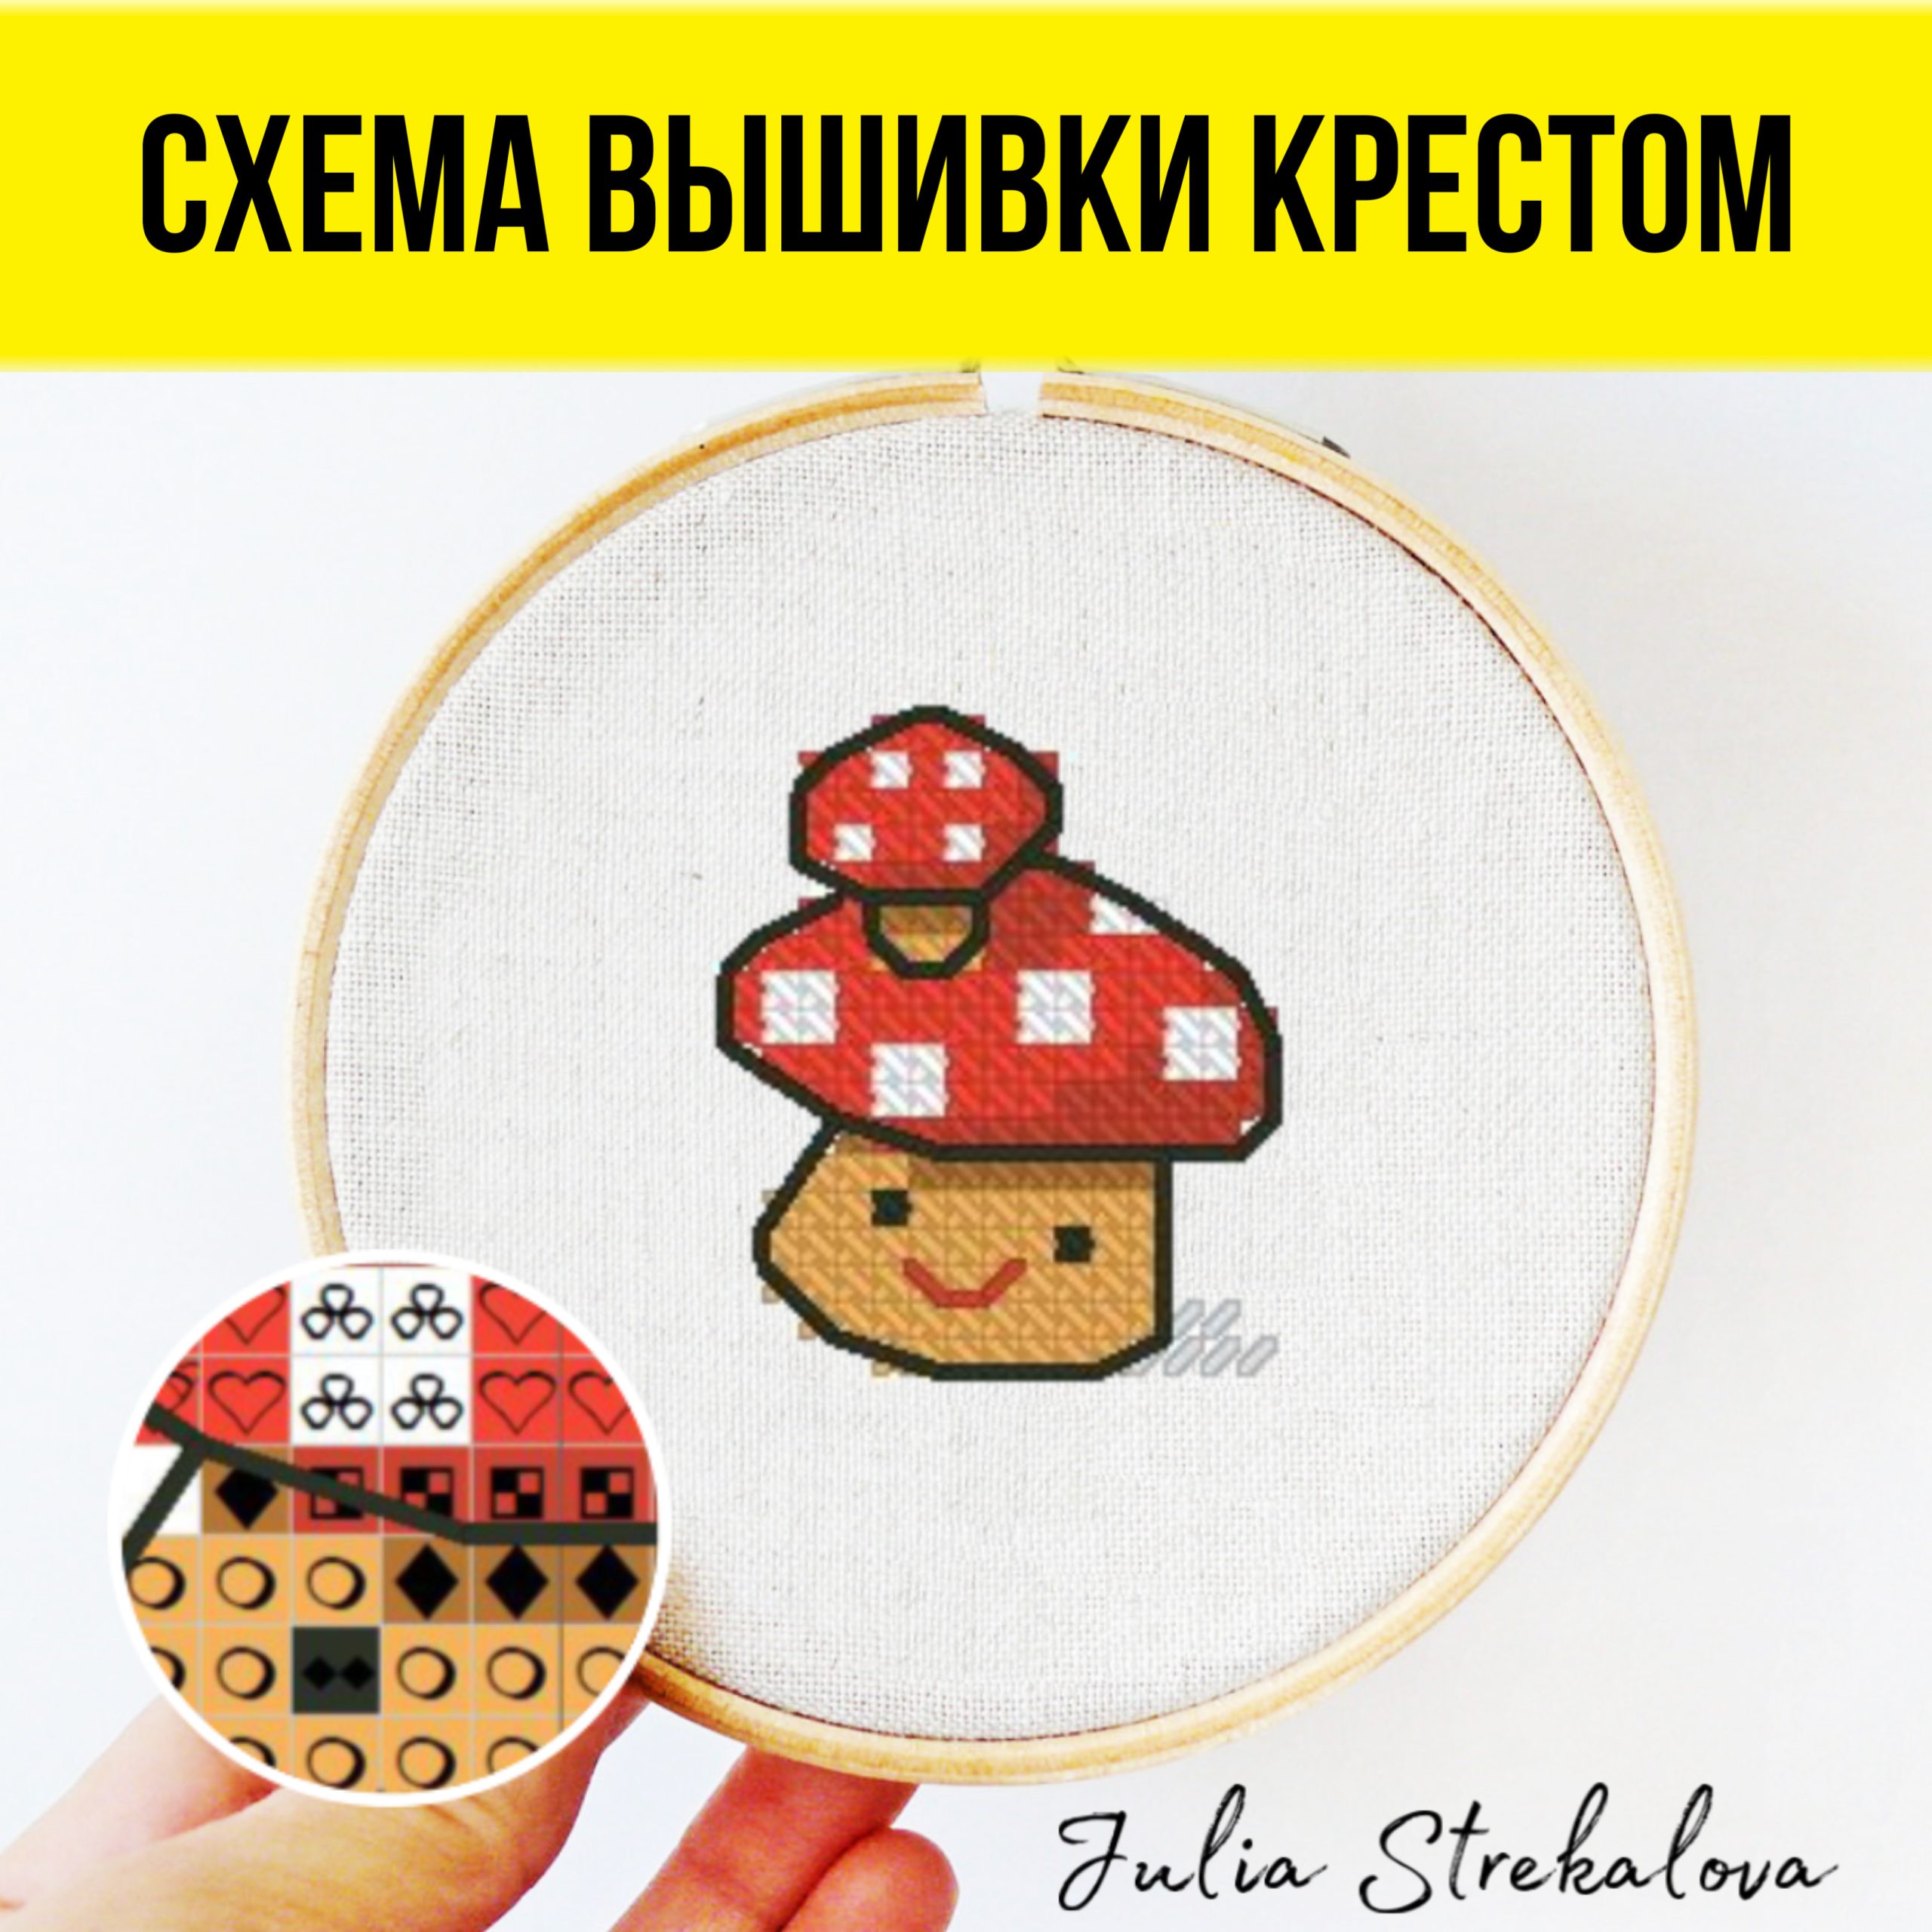 Авторская схема вышивания крестиком c детским сюжетом от Юлии Стрекаловой. Подойдет для детского творчества и начинающих.